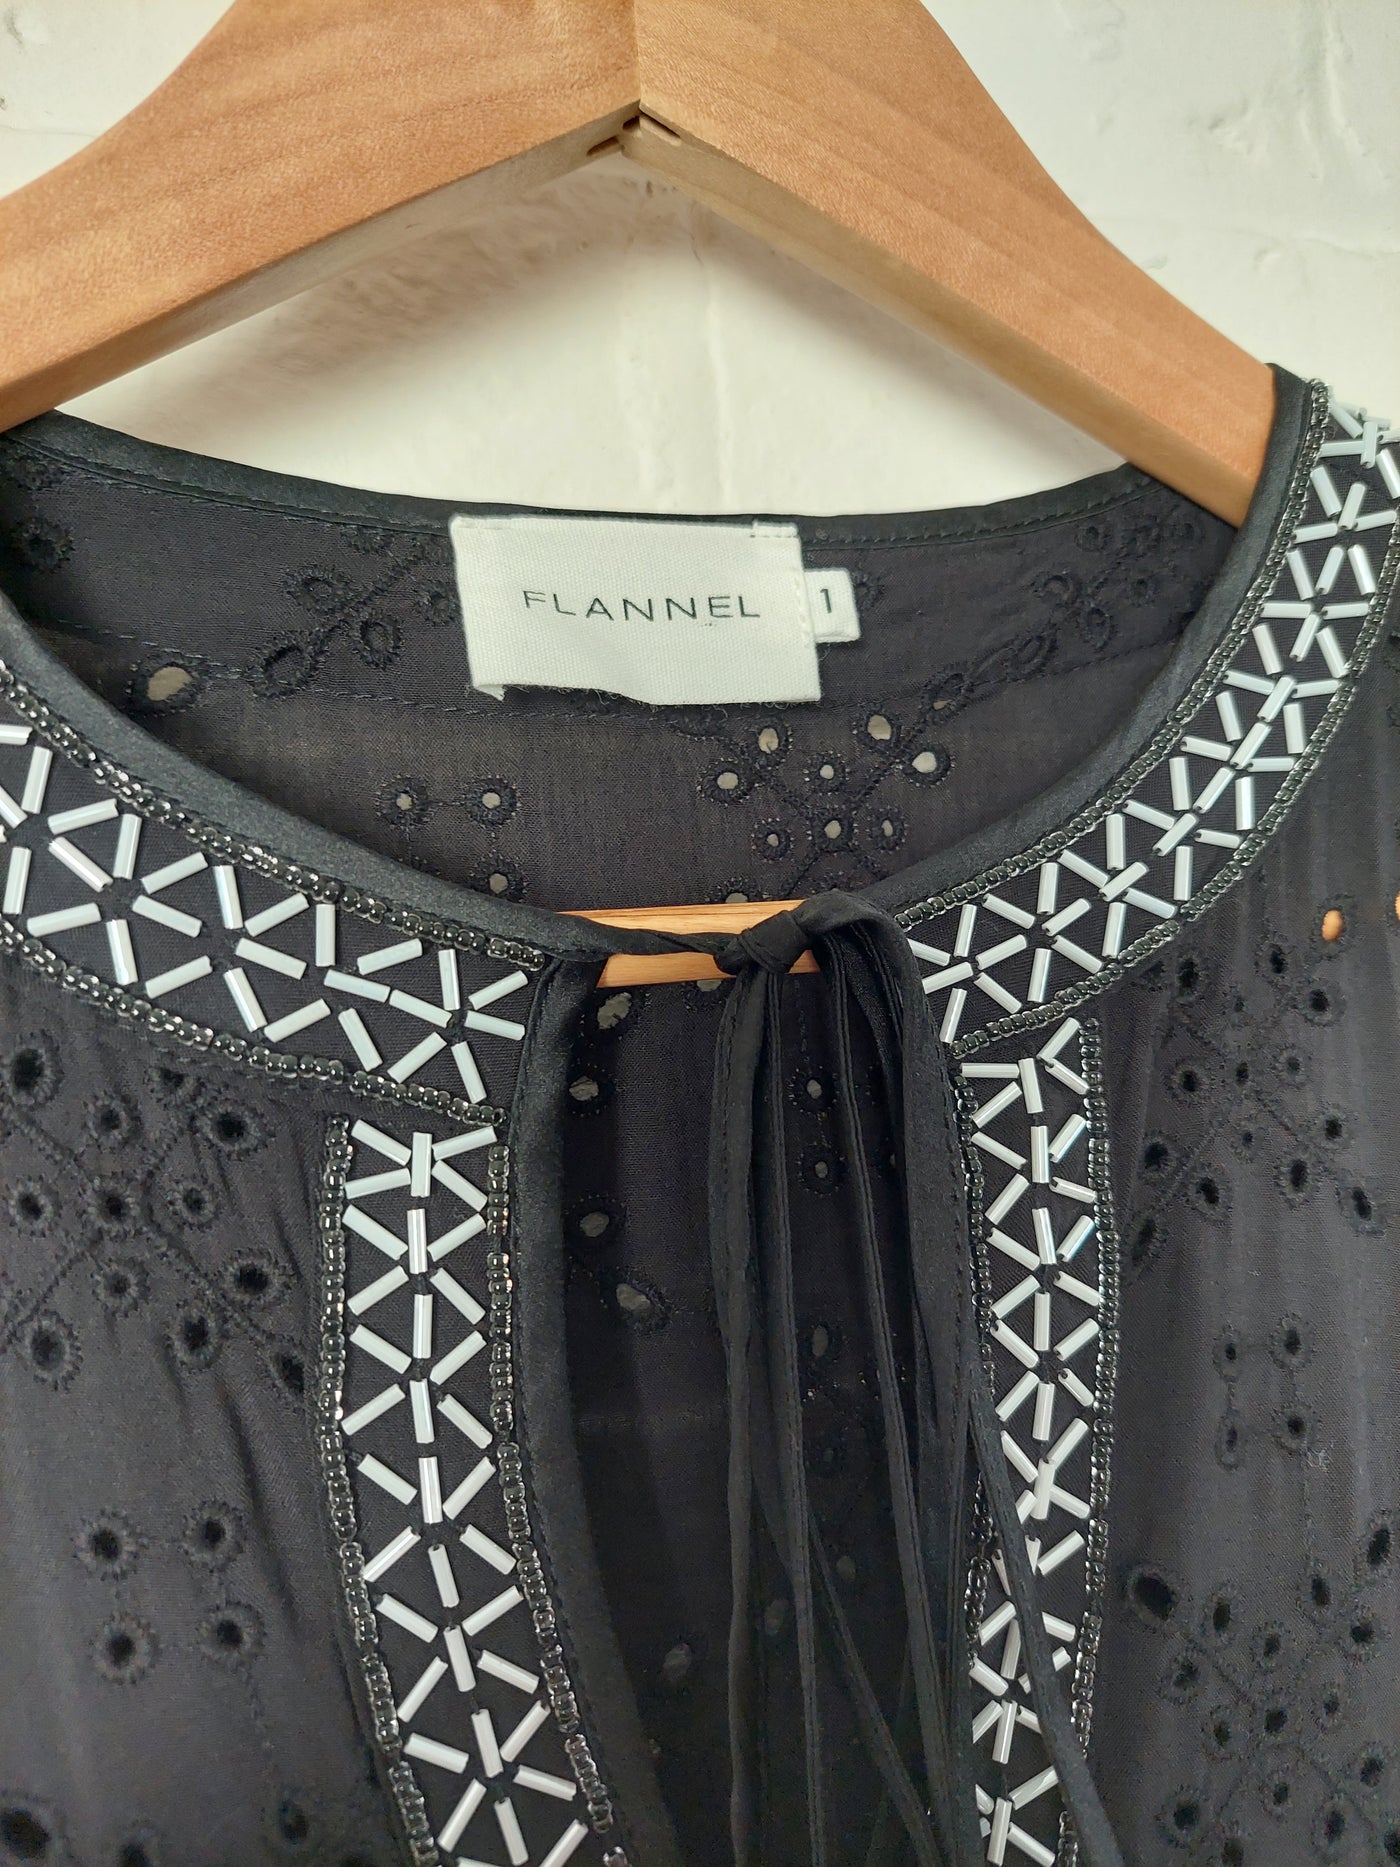 FLANNEL Designer V-neck black broderie dress with silk trim, Size 1 (AU 8-10)